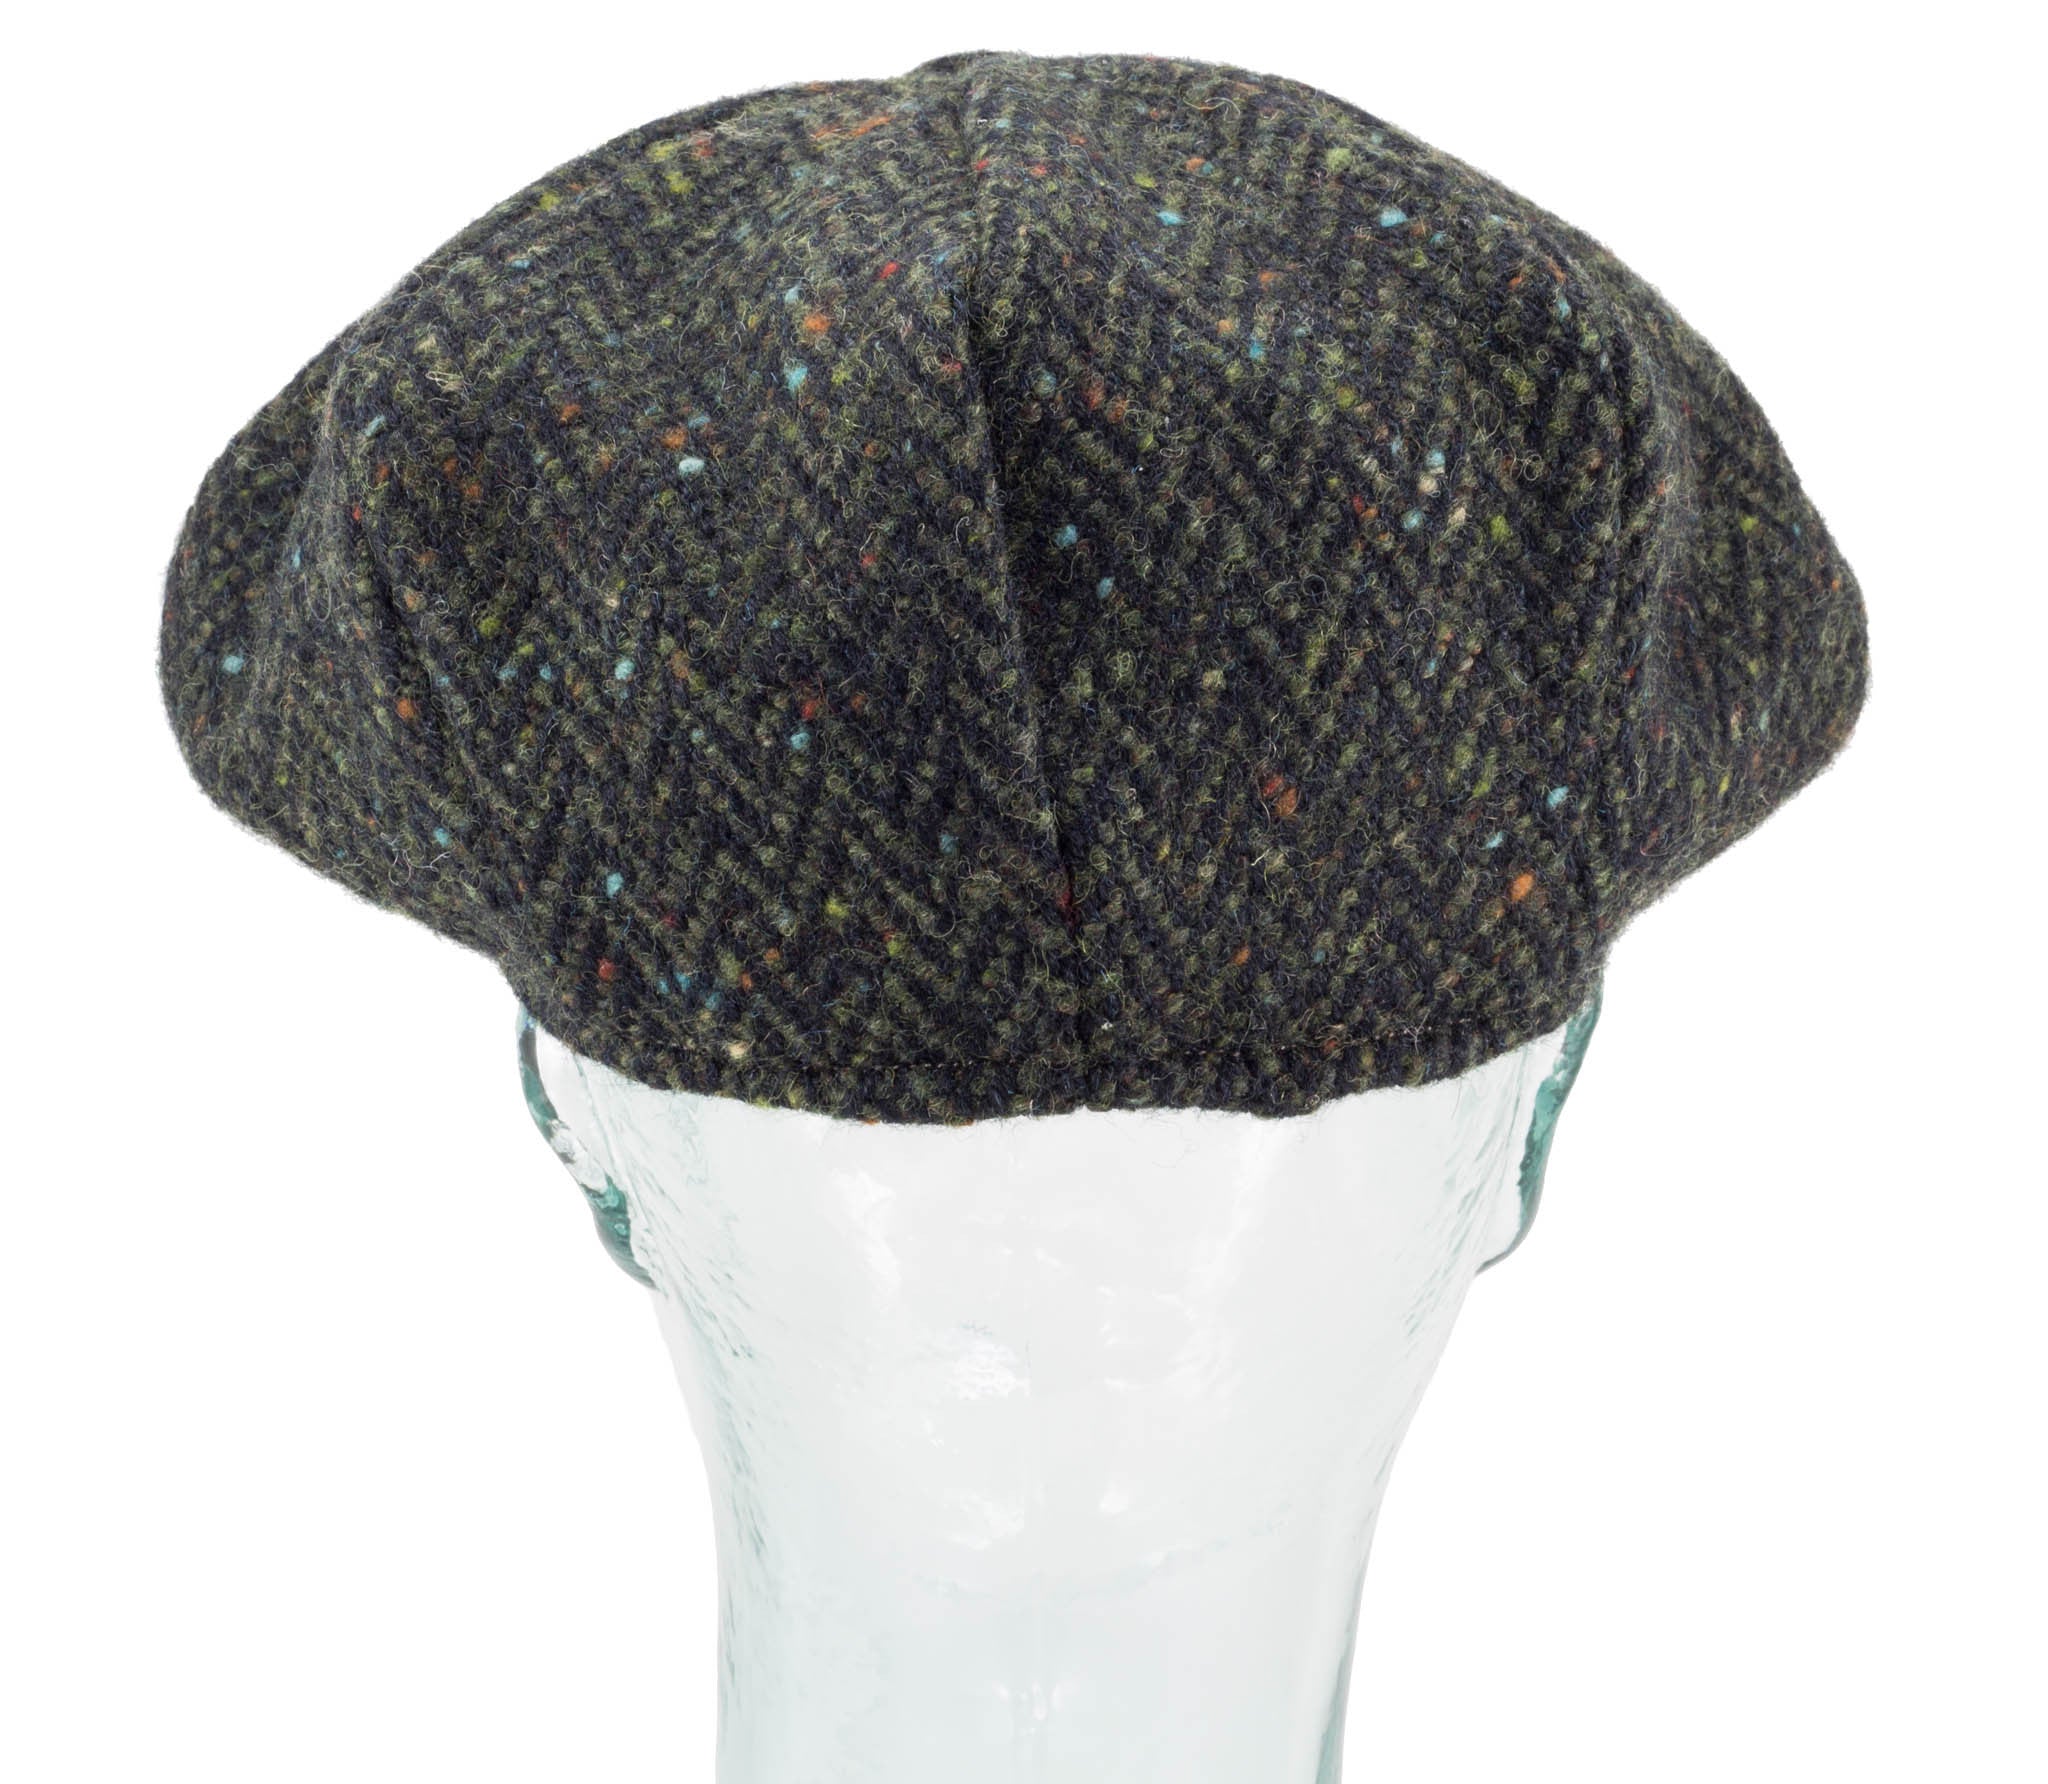 Handwoven Tweed - Eight Piece Cap